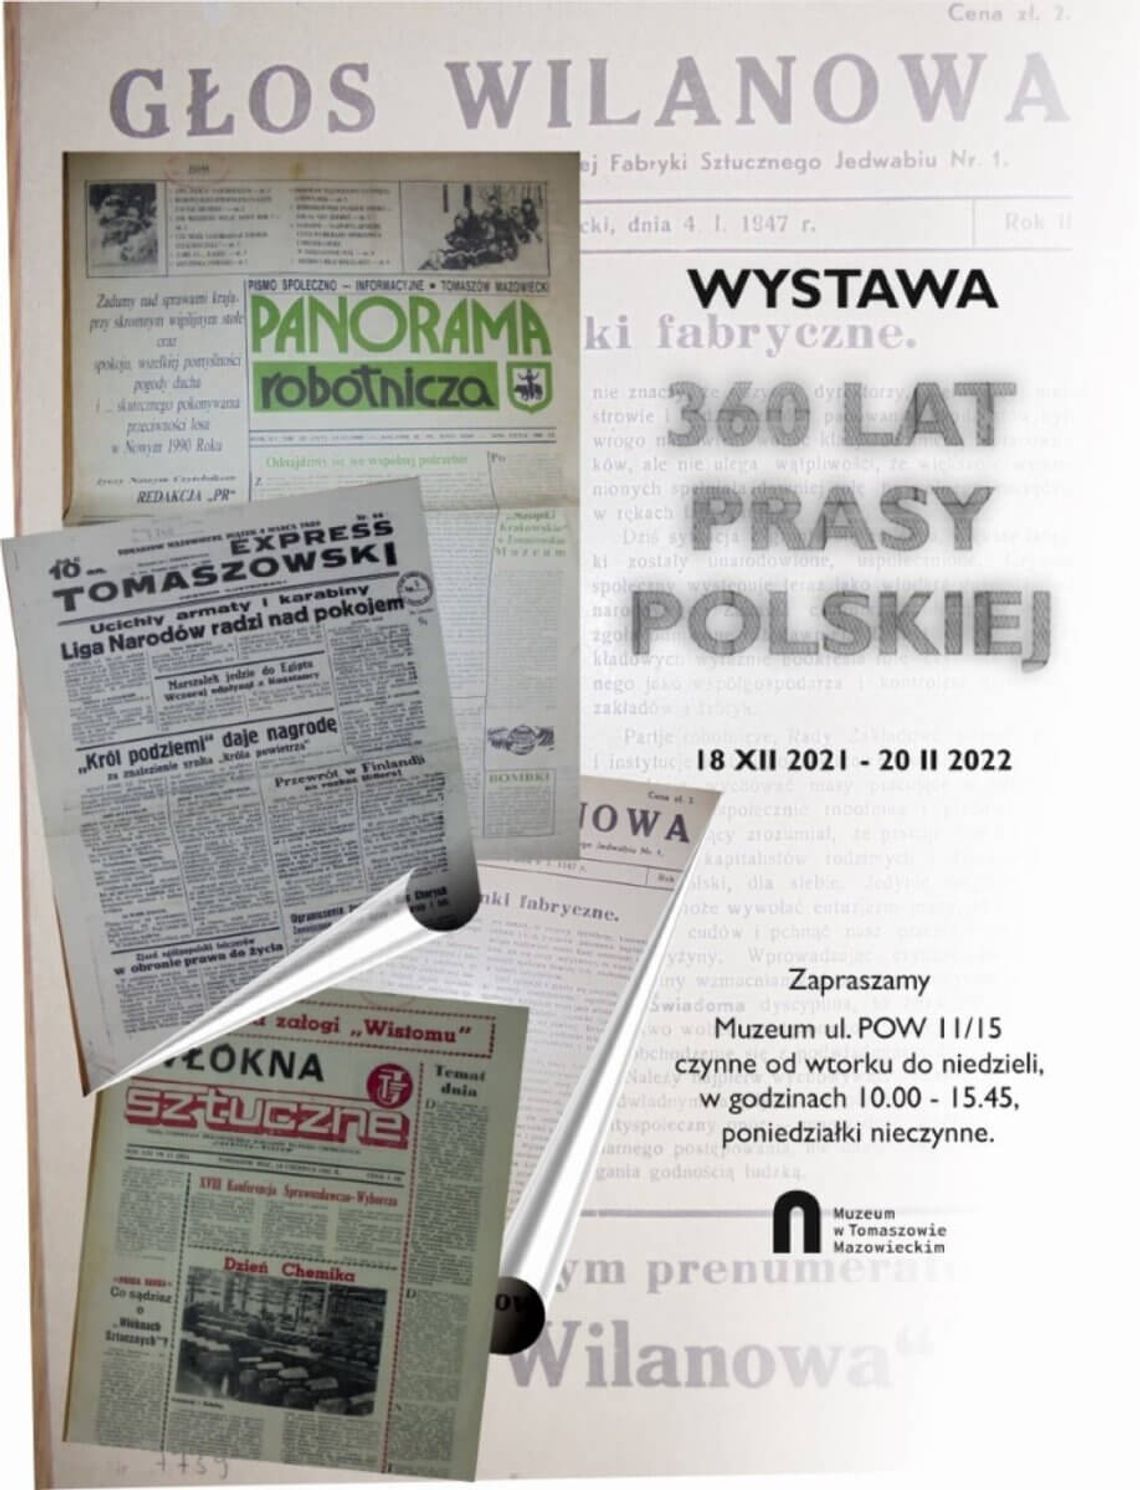 360 lat prasy polskiej. Zapraszamy do muzeum im. Antoniego hr. Ostrowskiego